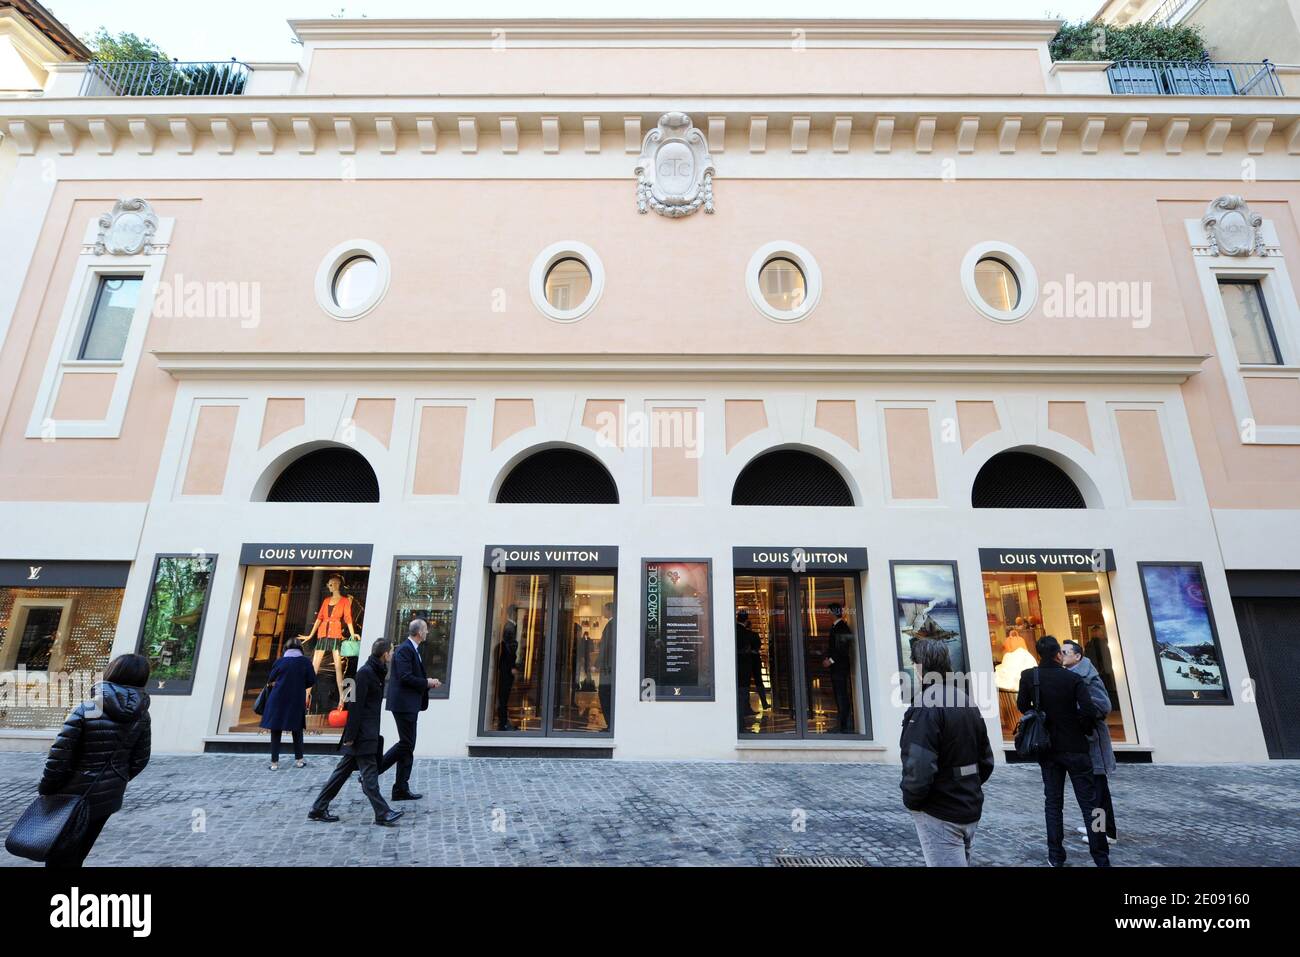 LOUIS VUITTON store Rome Italy Stock Photo - Alamy